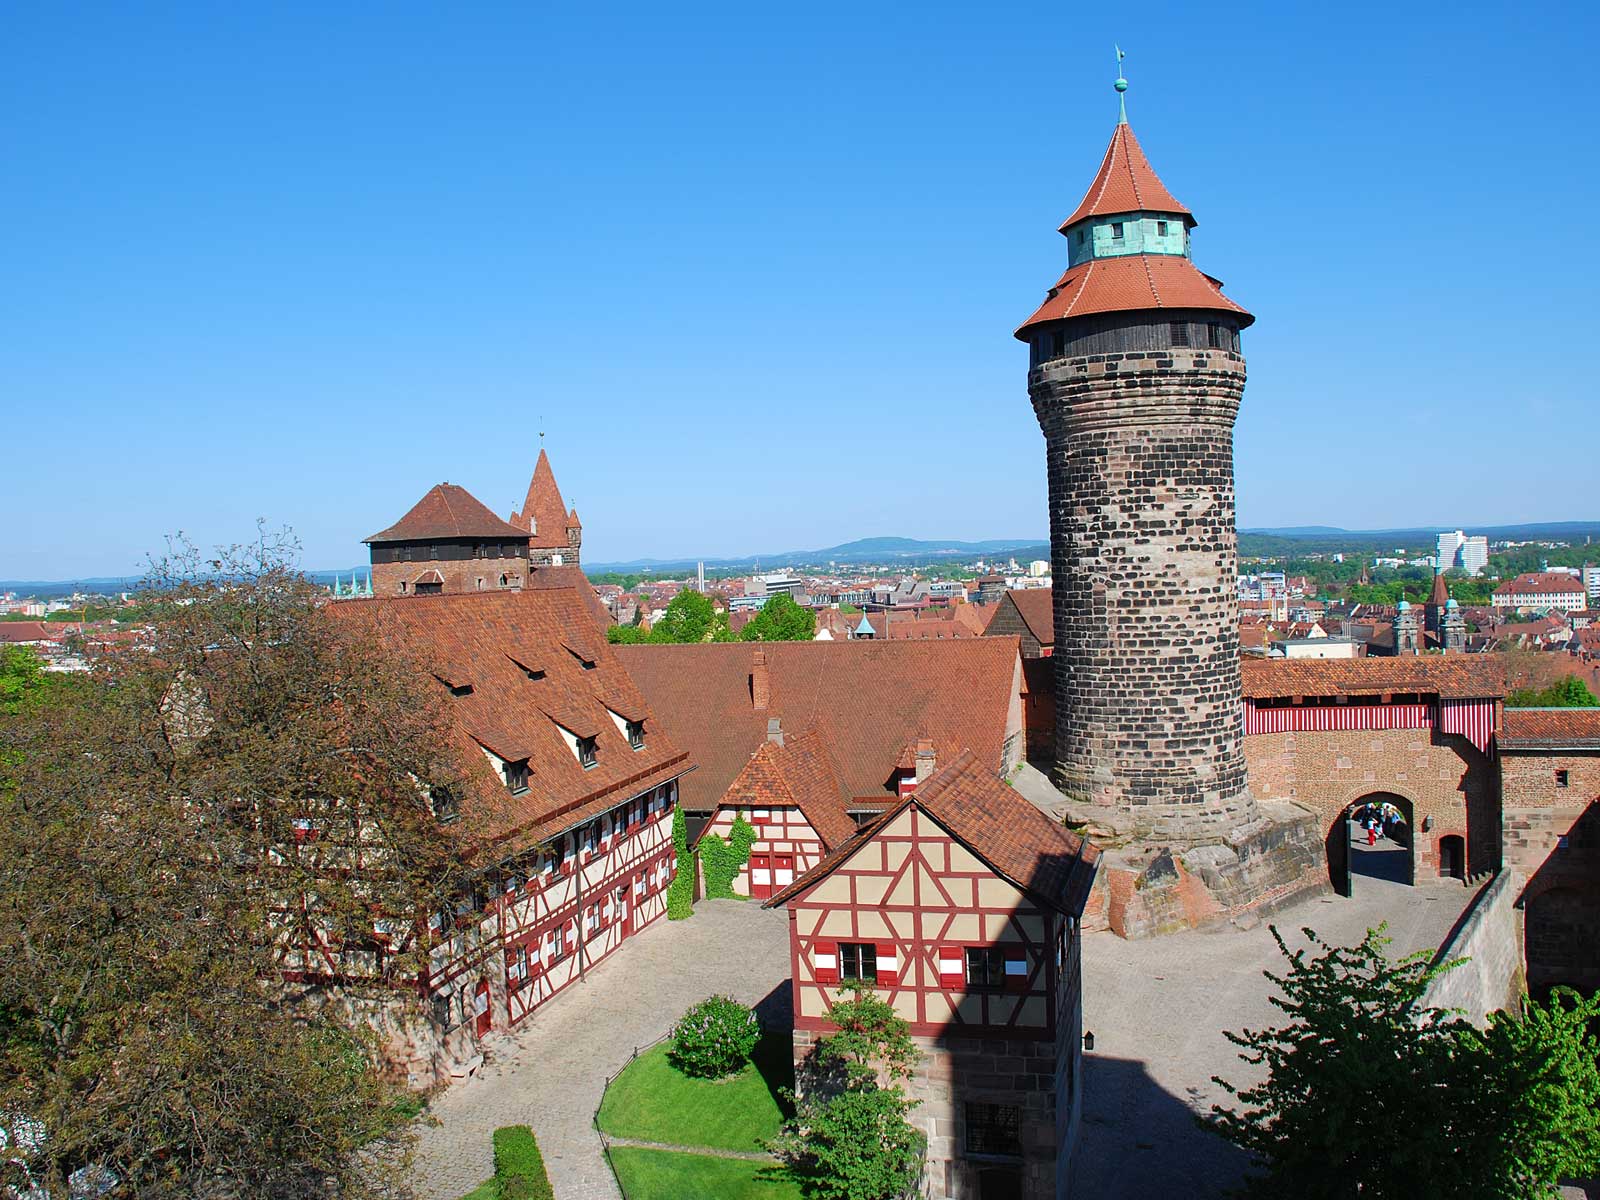 Lâu đài Nürnberg Kaiserburg